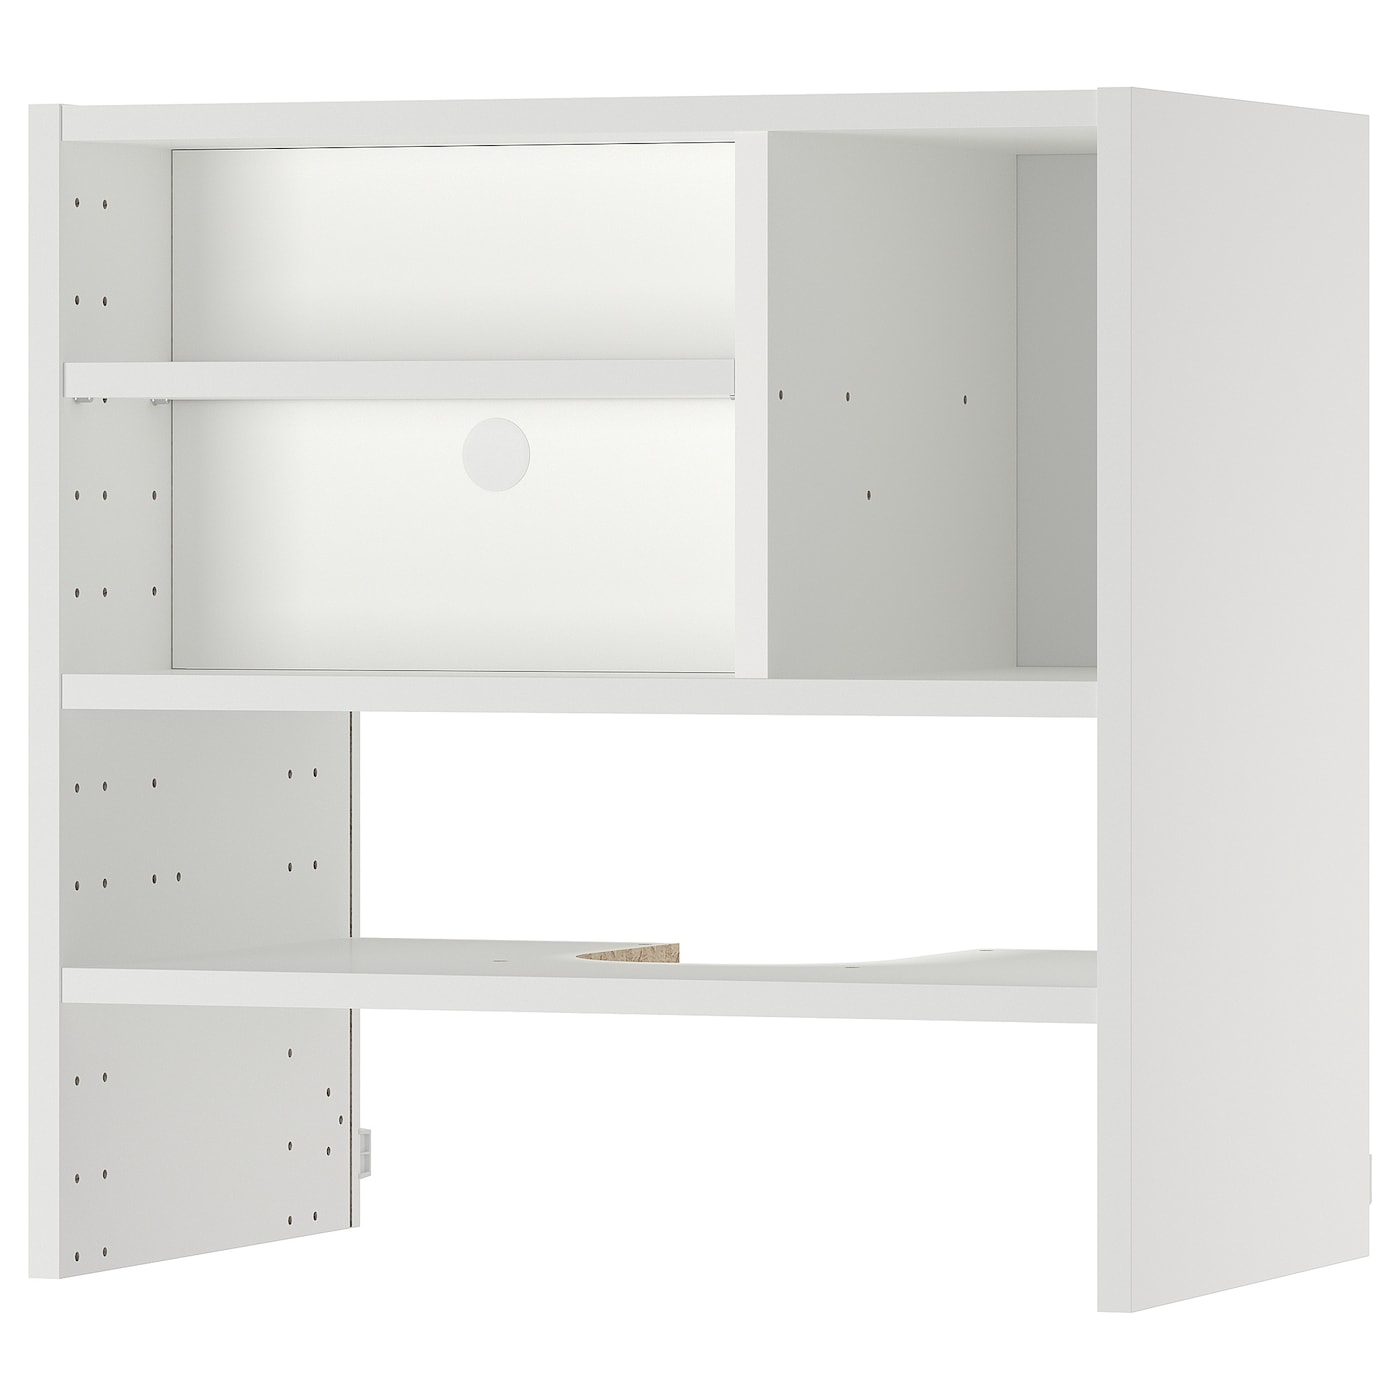 Шкафчик навесной для встроенной вытяжки -  METOD  IKEA/  МЕТОД ИКЕА, 60х60 см, белый